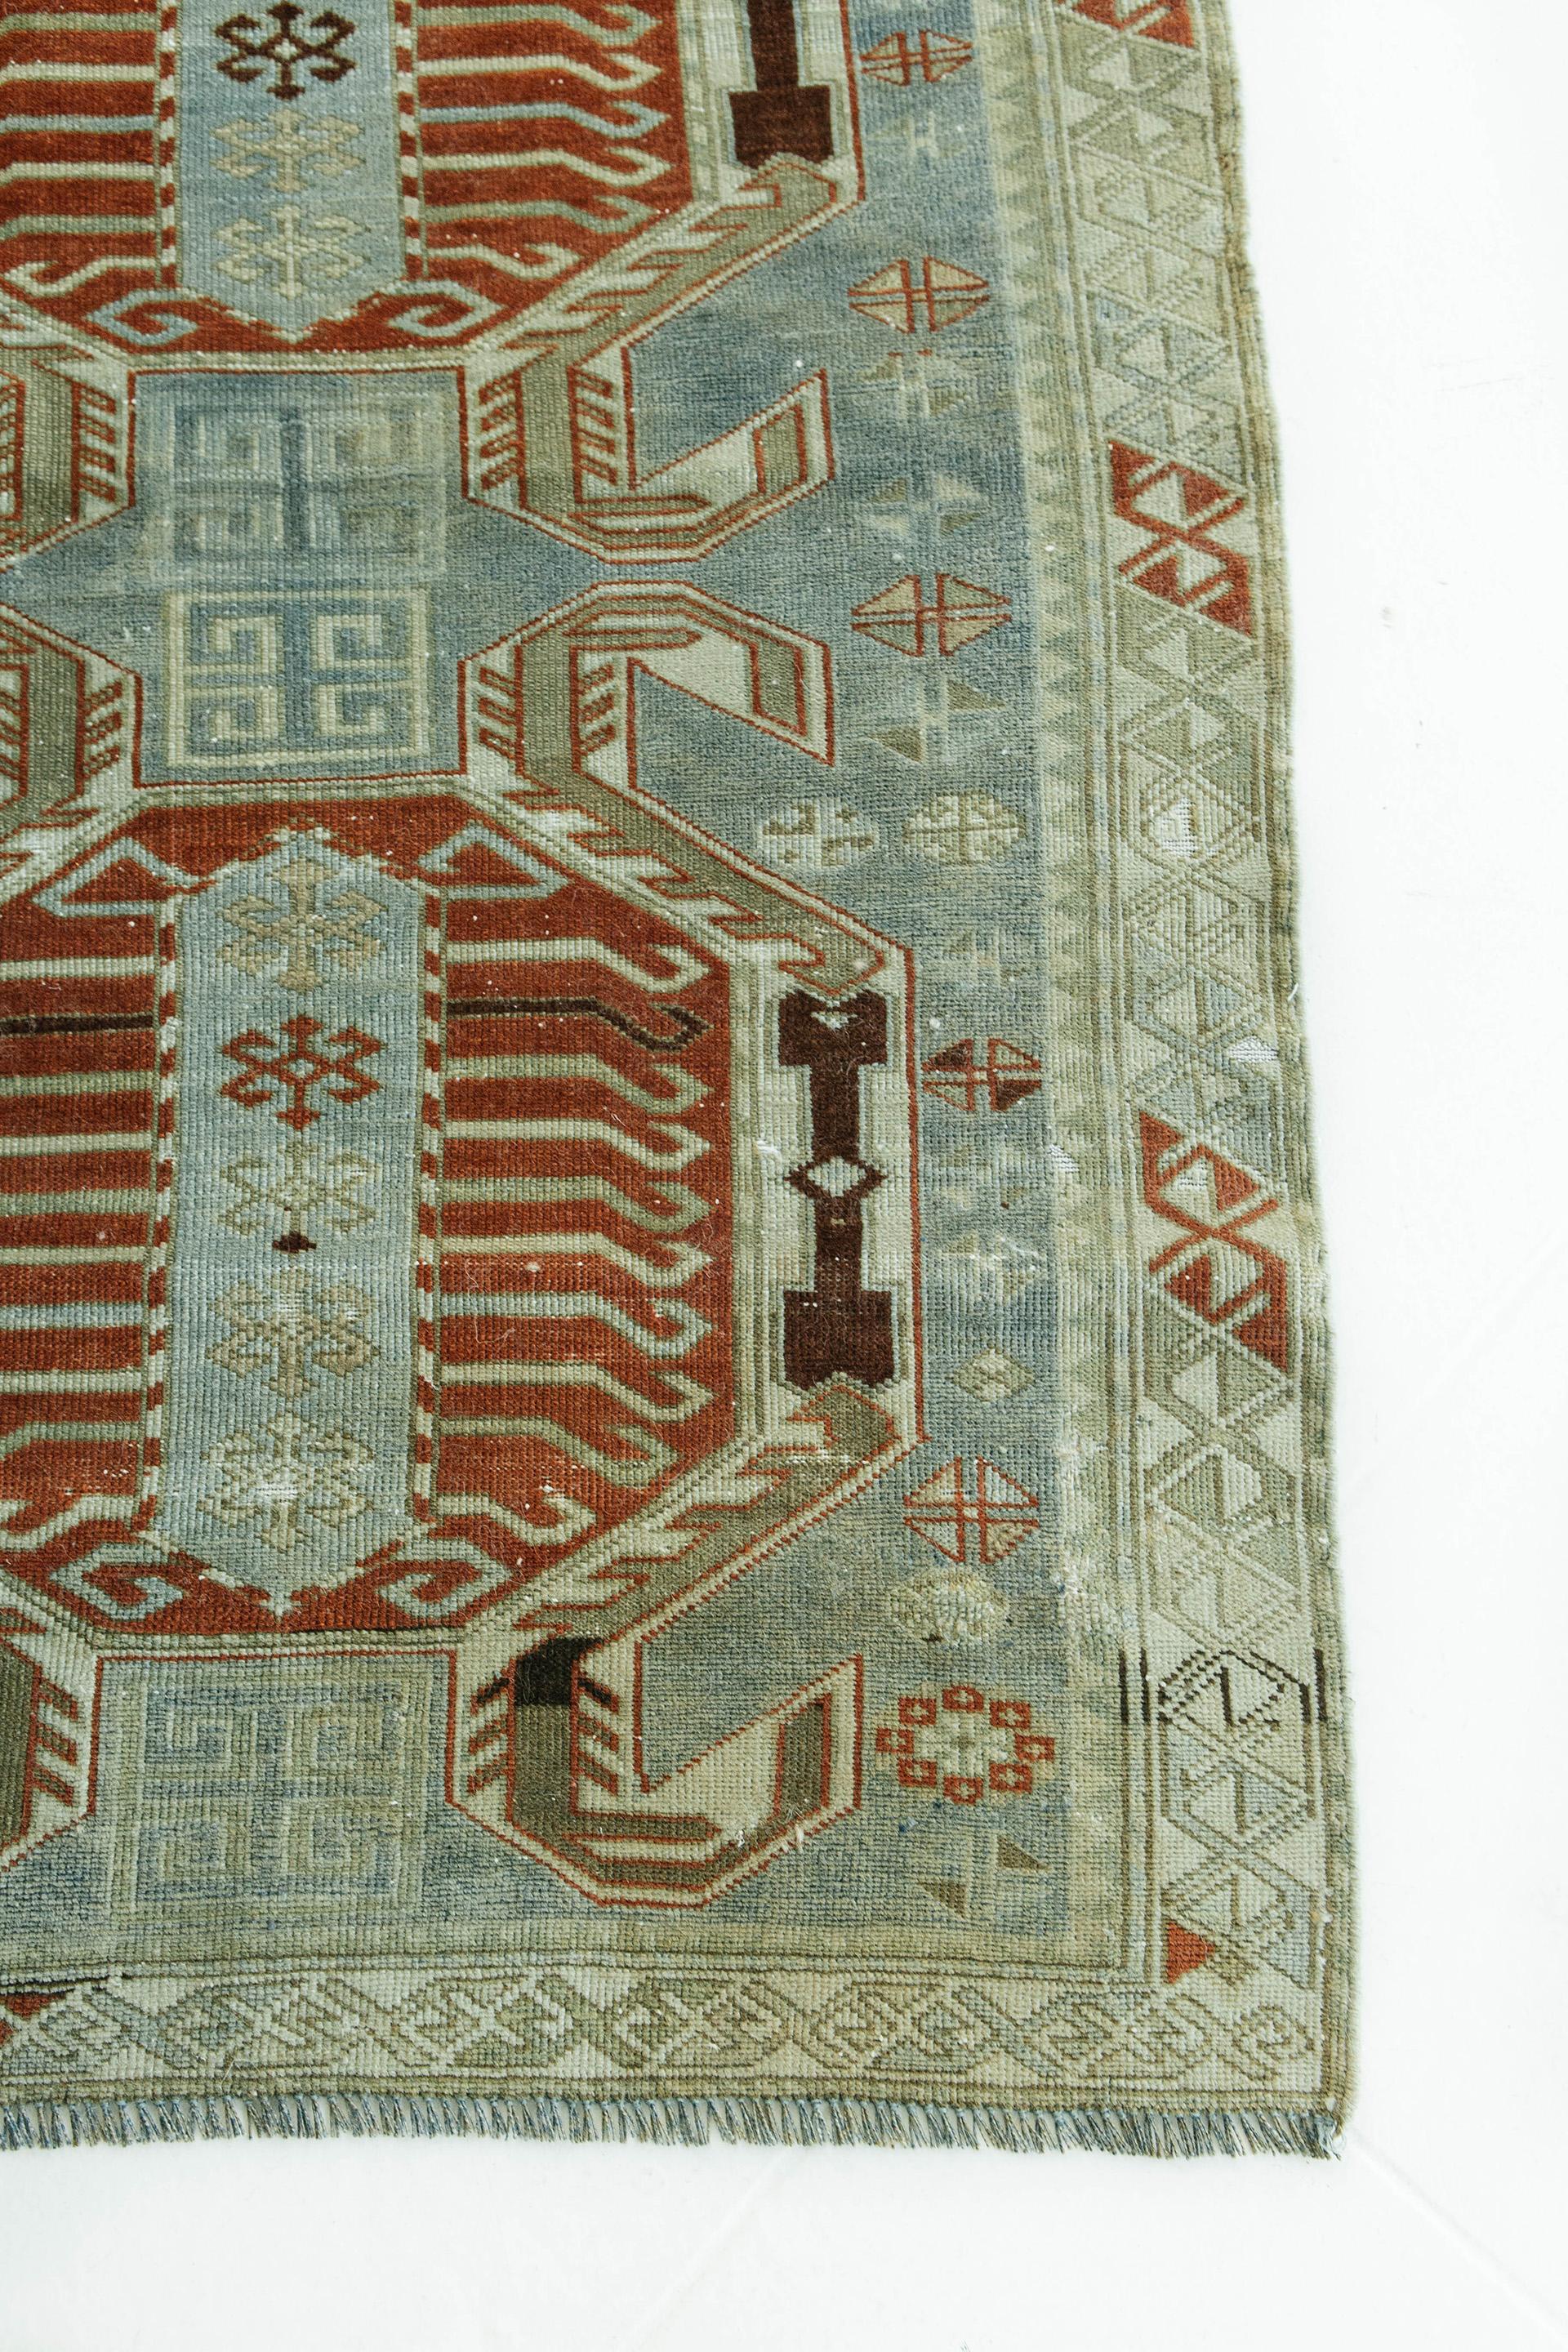 19th Century Antique Caucasian Lenkoran Rug